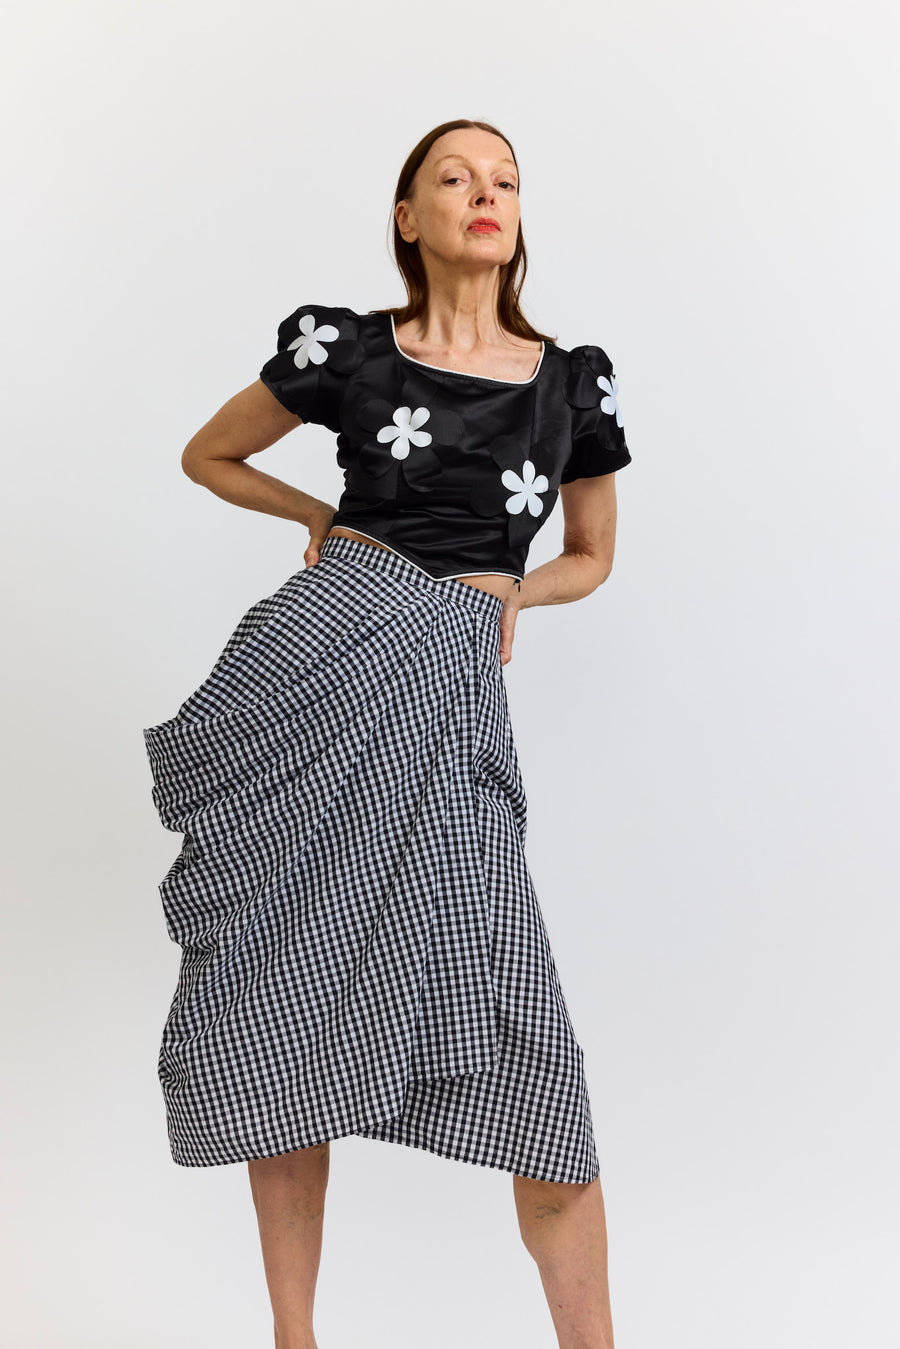 BATSHEVA - Vivienne Skirt in Black and White Gingham Cotton